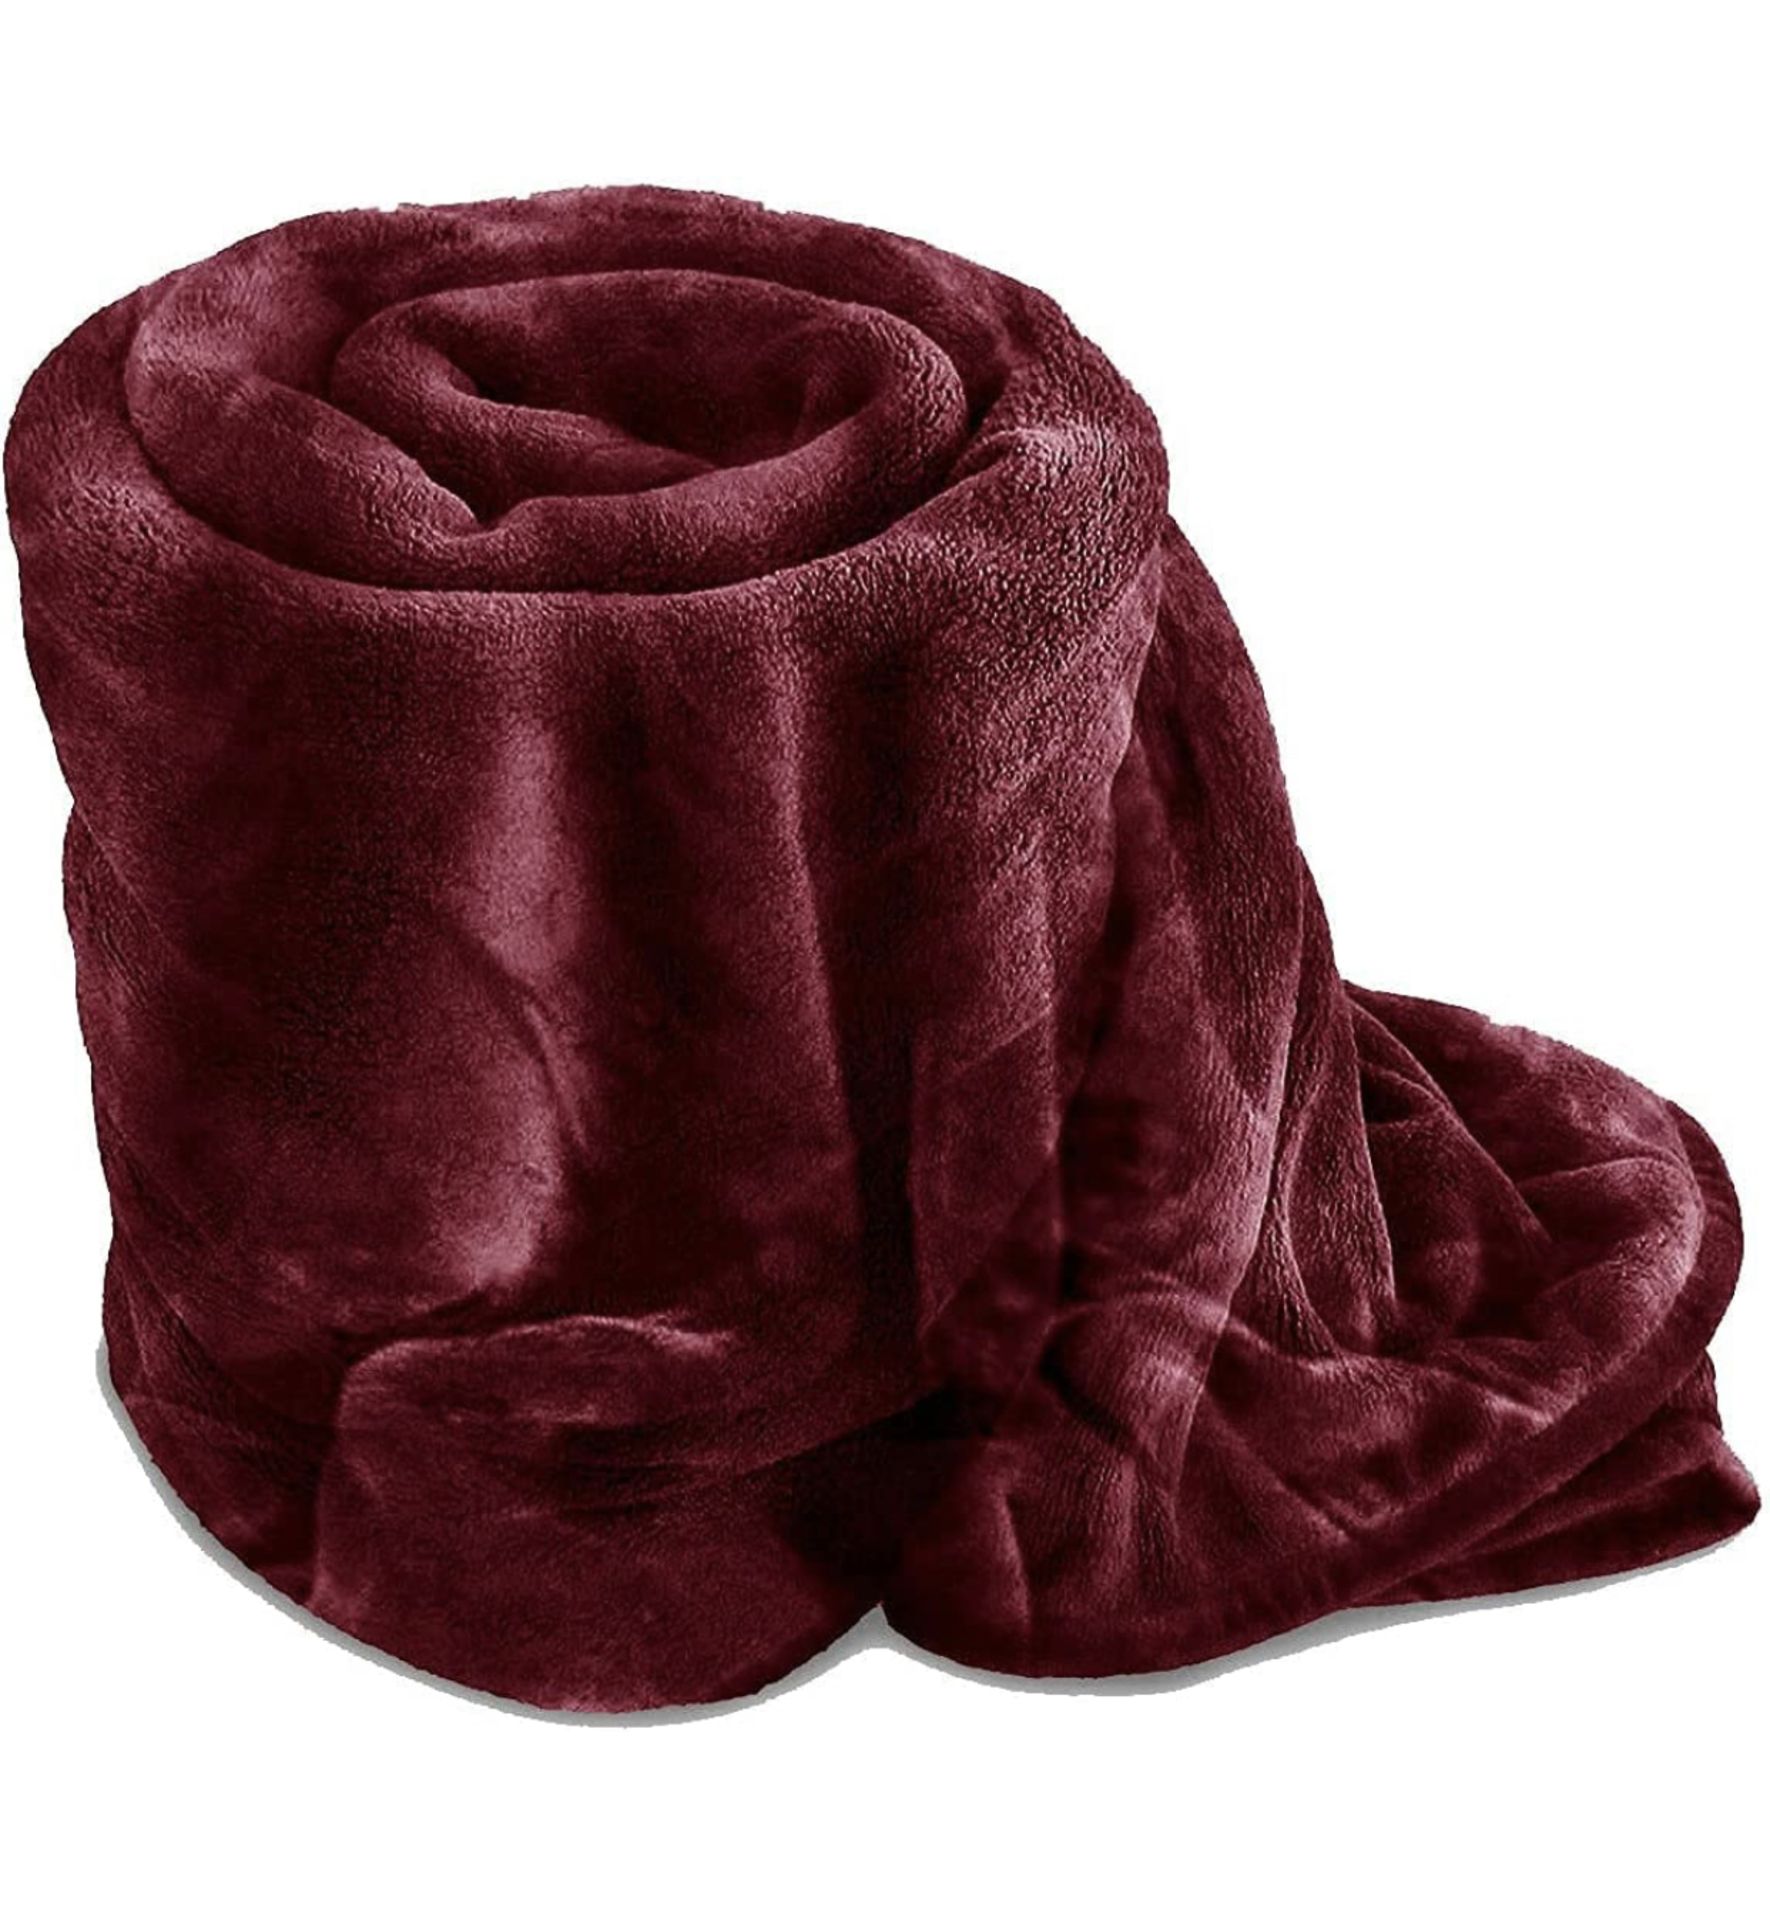 Silk Touch Flannel Fleece Blanket, 150 x 200 cm Burgundy Throw